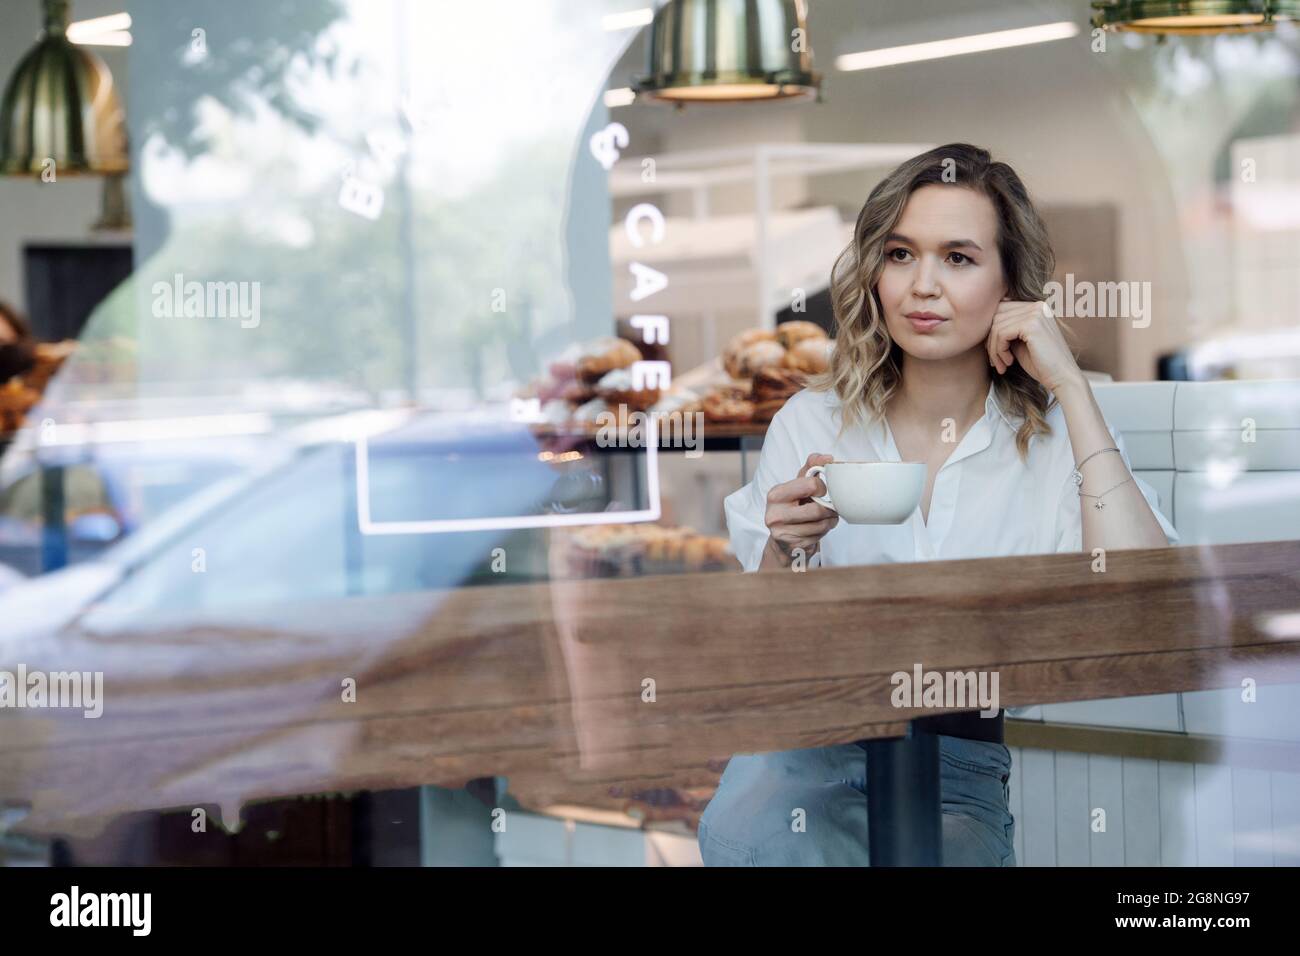 Paisible femme blonde appréciant son café dans un café, assis à côté d'une fenêtre, regardant à une distance. Elle porte une chemise bleue et un Jean léger. Banque D'Images